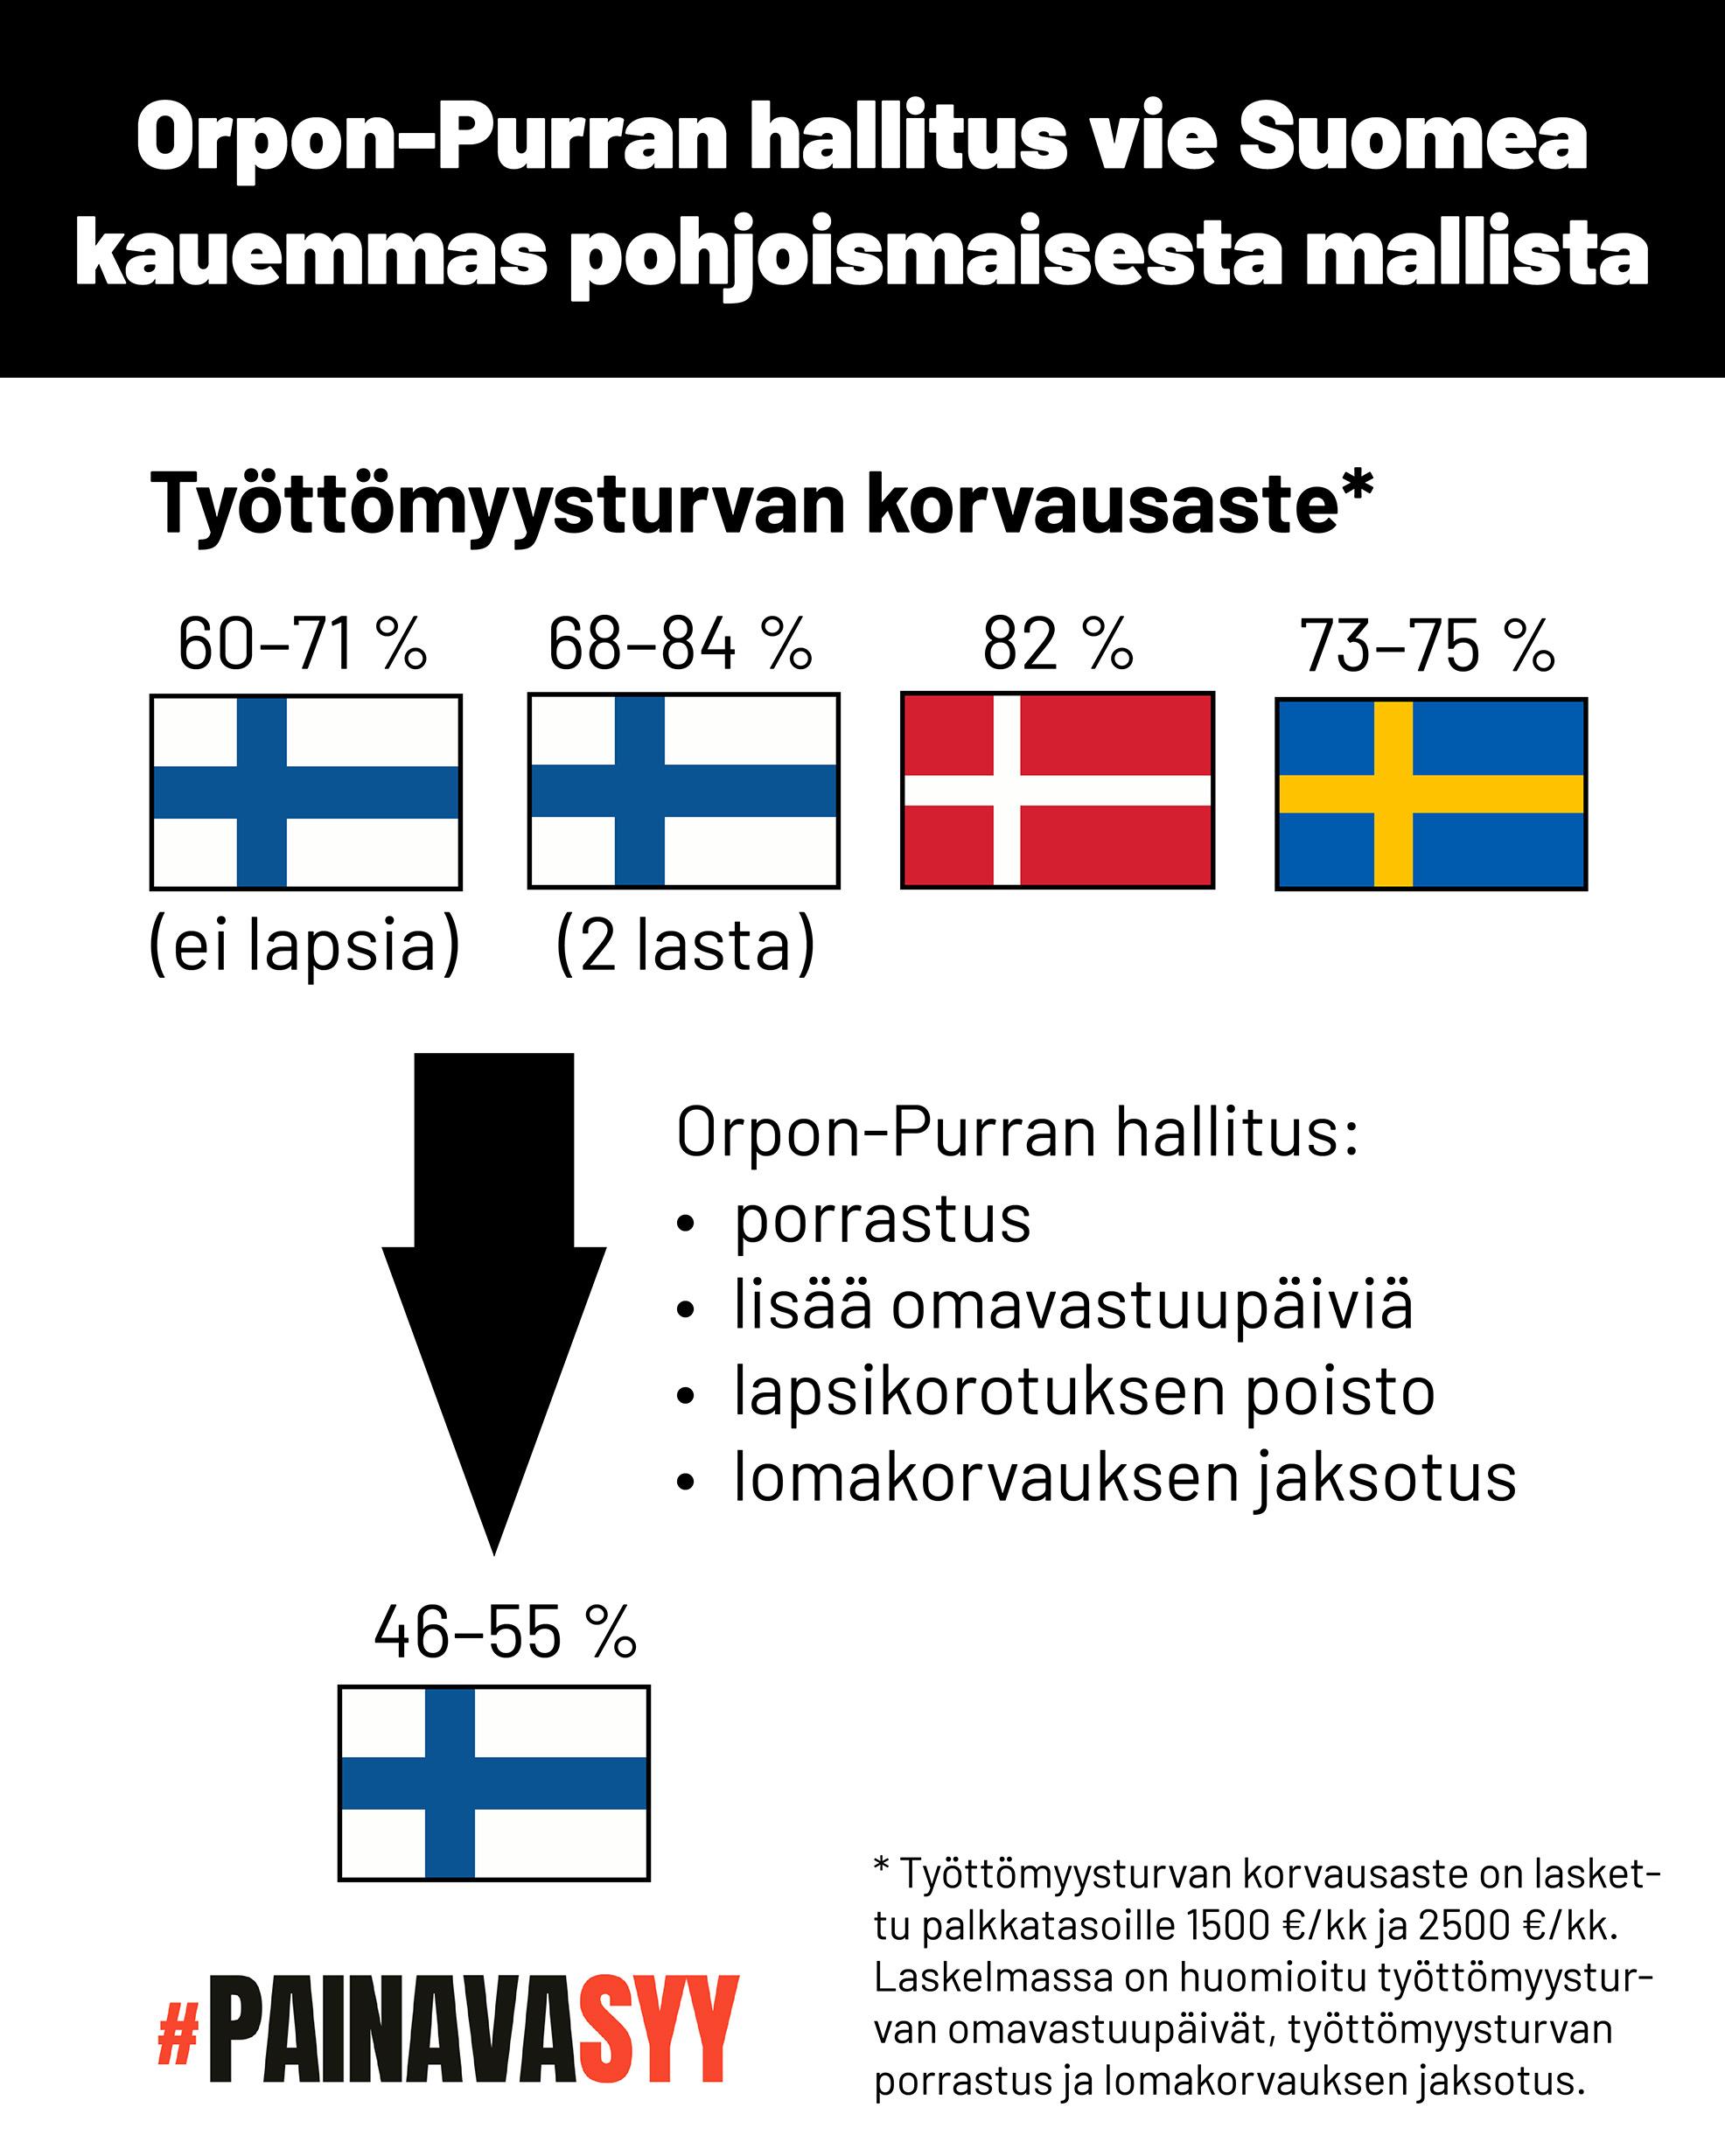 Kaavio osoittaa, että Orpon-Purran hallituksen esitykset työttömyysturvan porrastuksesta, omavastuupäivien lisäämisestä, lapsikorotuksen poistosta ja lomakorvauksen jaksotuksen poistosta laskevat työttömyysturvan korvausasteen Suomessa 46–55 prosenttiin, joka on selkeästi pienempi kuin Suomessa nyt (60–84 prosenttia) tai Tanskassa (82 prosenttia) ja Ruotsissa (73–75 prosenttia). Työttömyysturvan korvausaste on laskettu palkkatasoille 1500 euroa/kk ja 2500 euroa/kk.